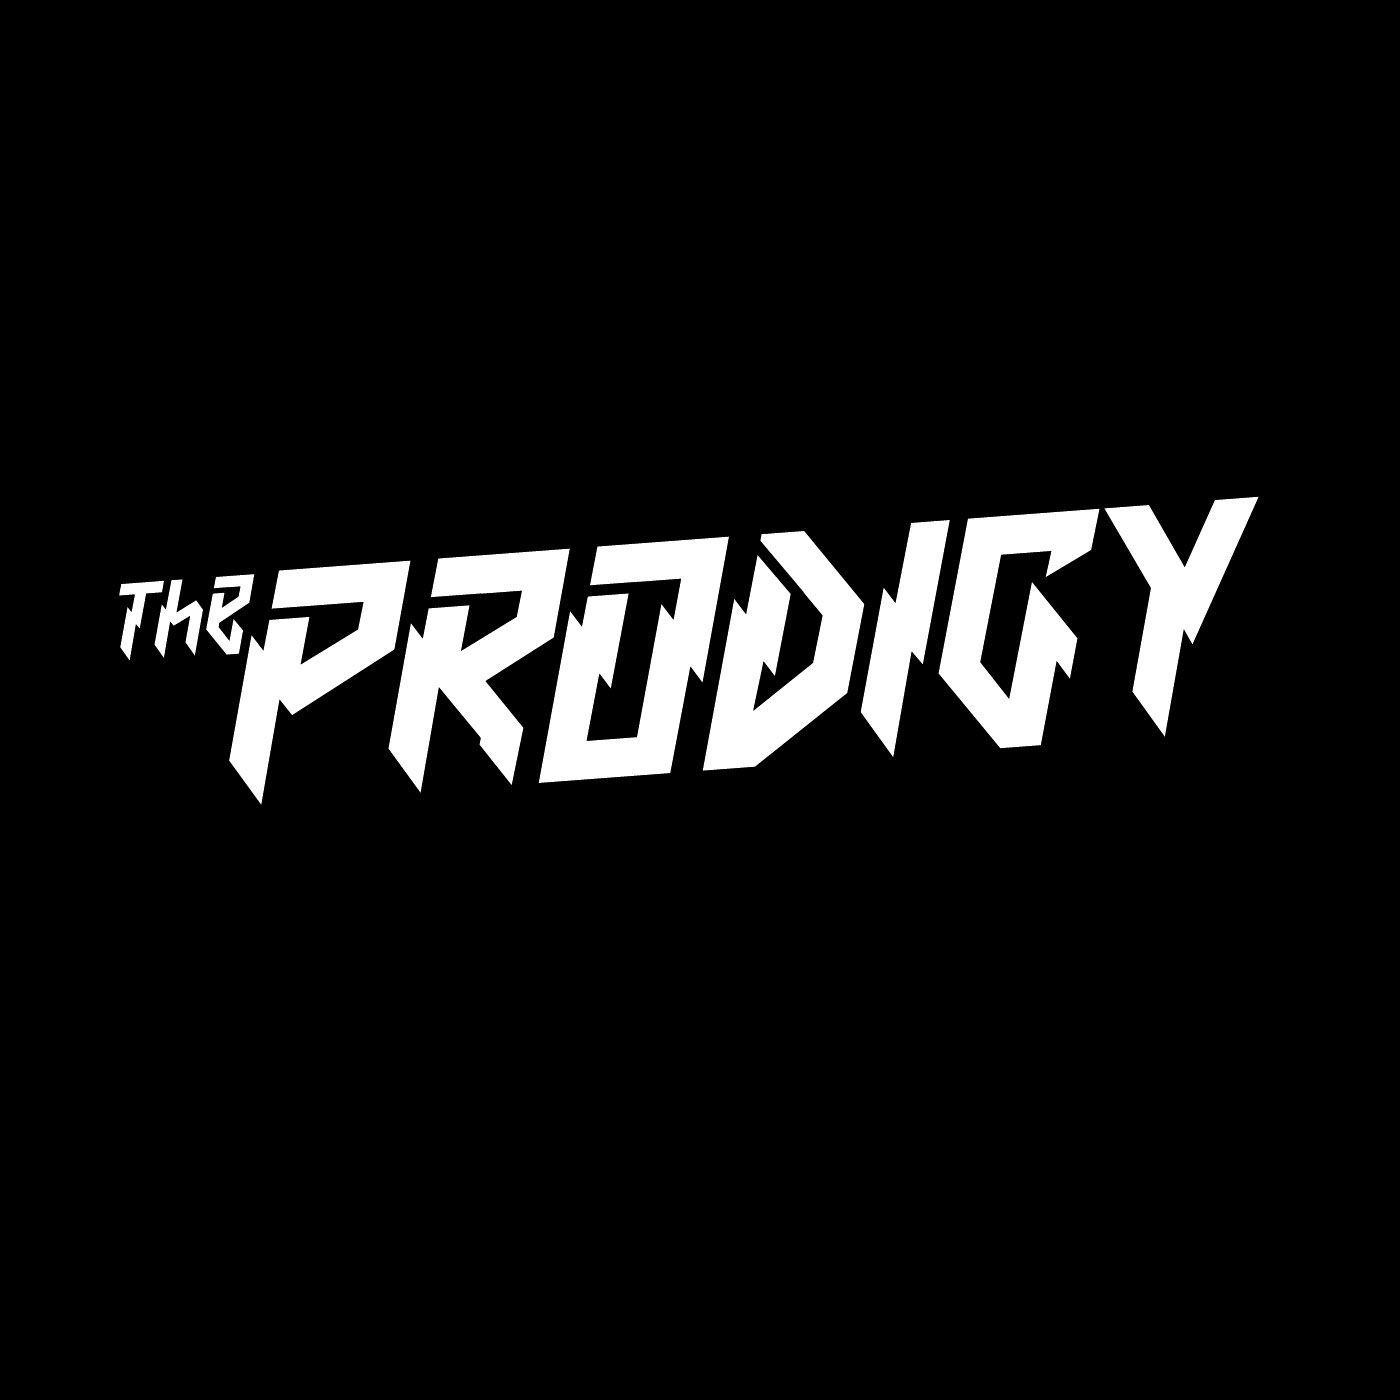 Prodigy Logo - the prodigy logo wallpaper. L O G O. Music logo, Rap metal, Band logos